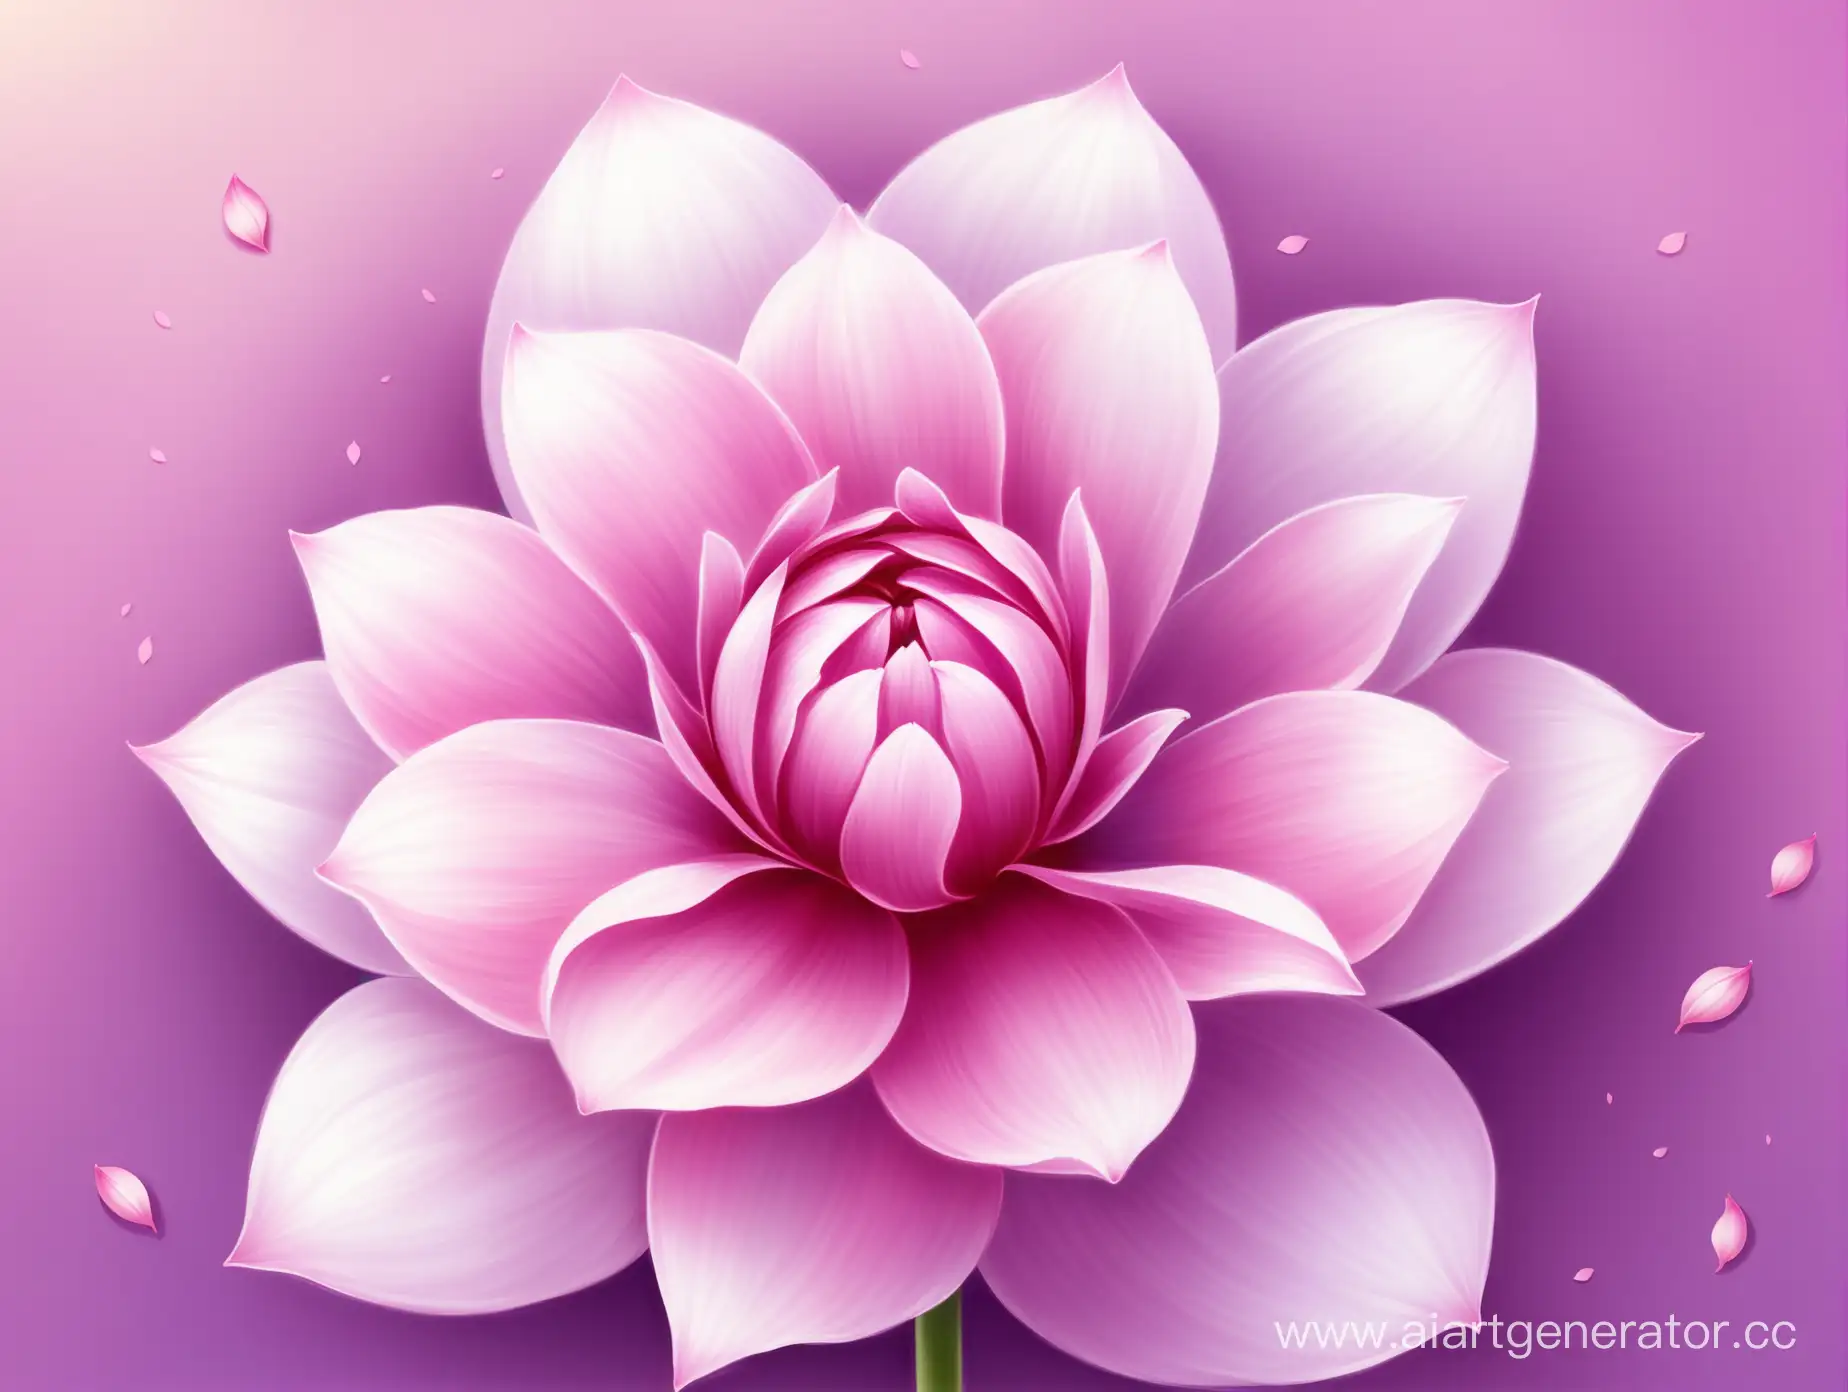 Delicate-Pink-Flower-Bud-on-Soft-Violet-Background